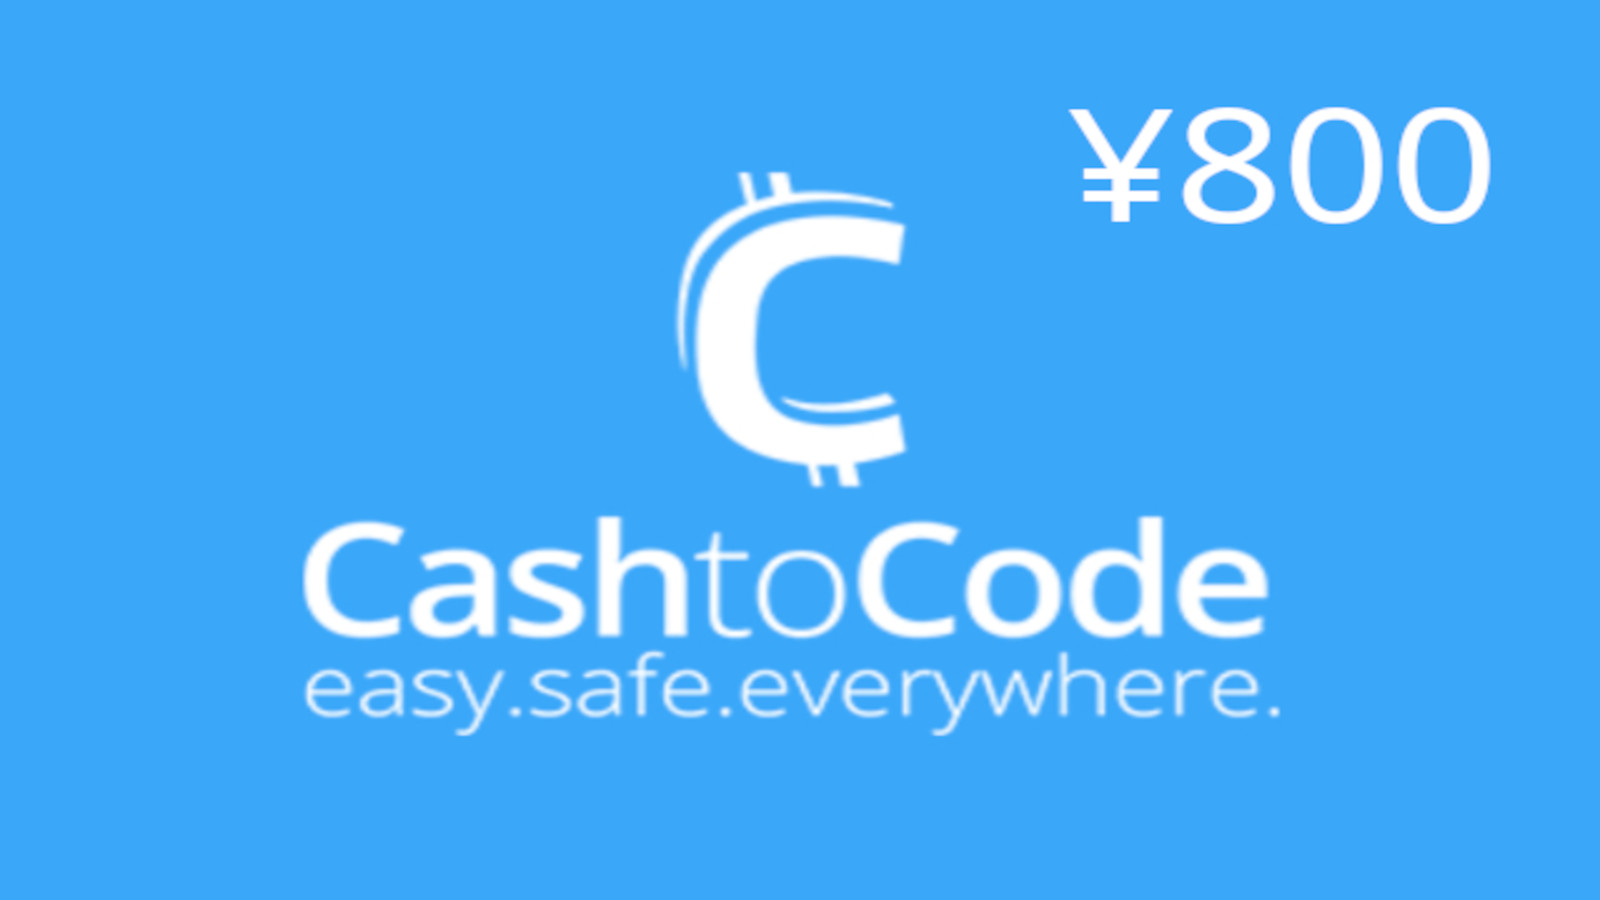 CashtoCode ¥800 Gift Card CN 128.52 $